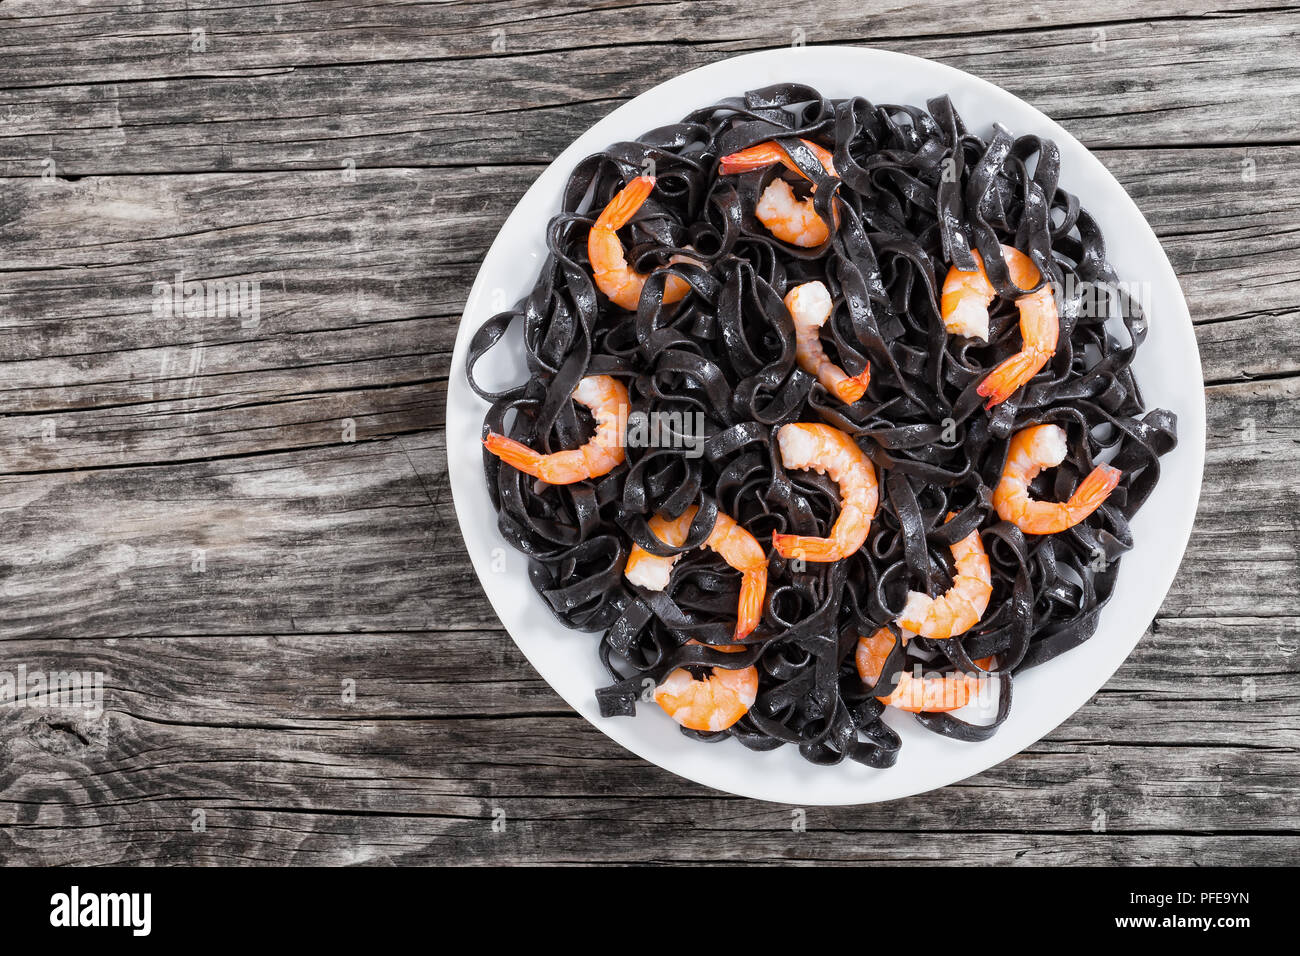 Deliziosa nero di seppia tagliatelle nere con gamberetti sul piatto bianco sul buio wwoden tabella, vista dall'alto. Foto Stock